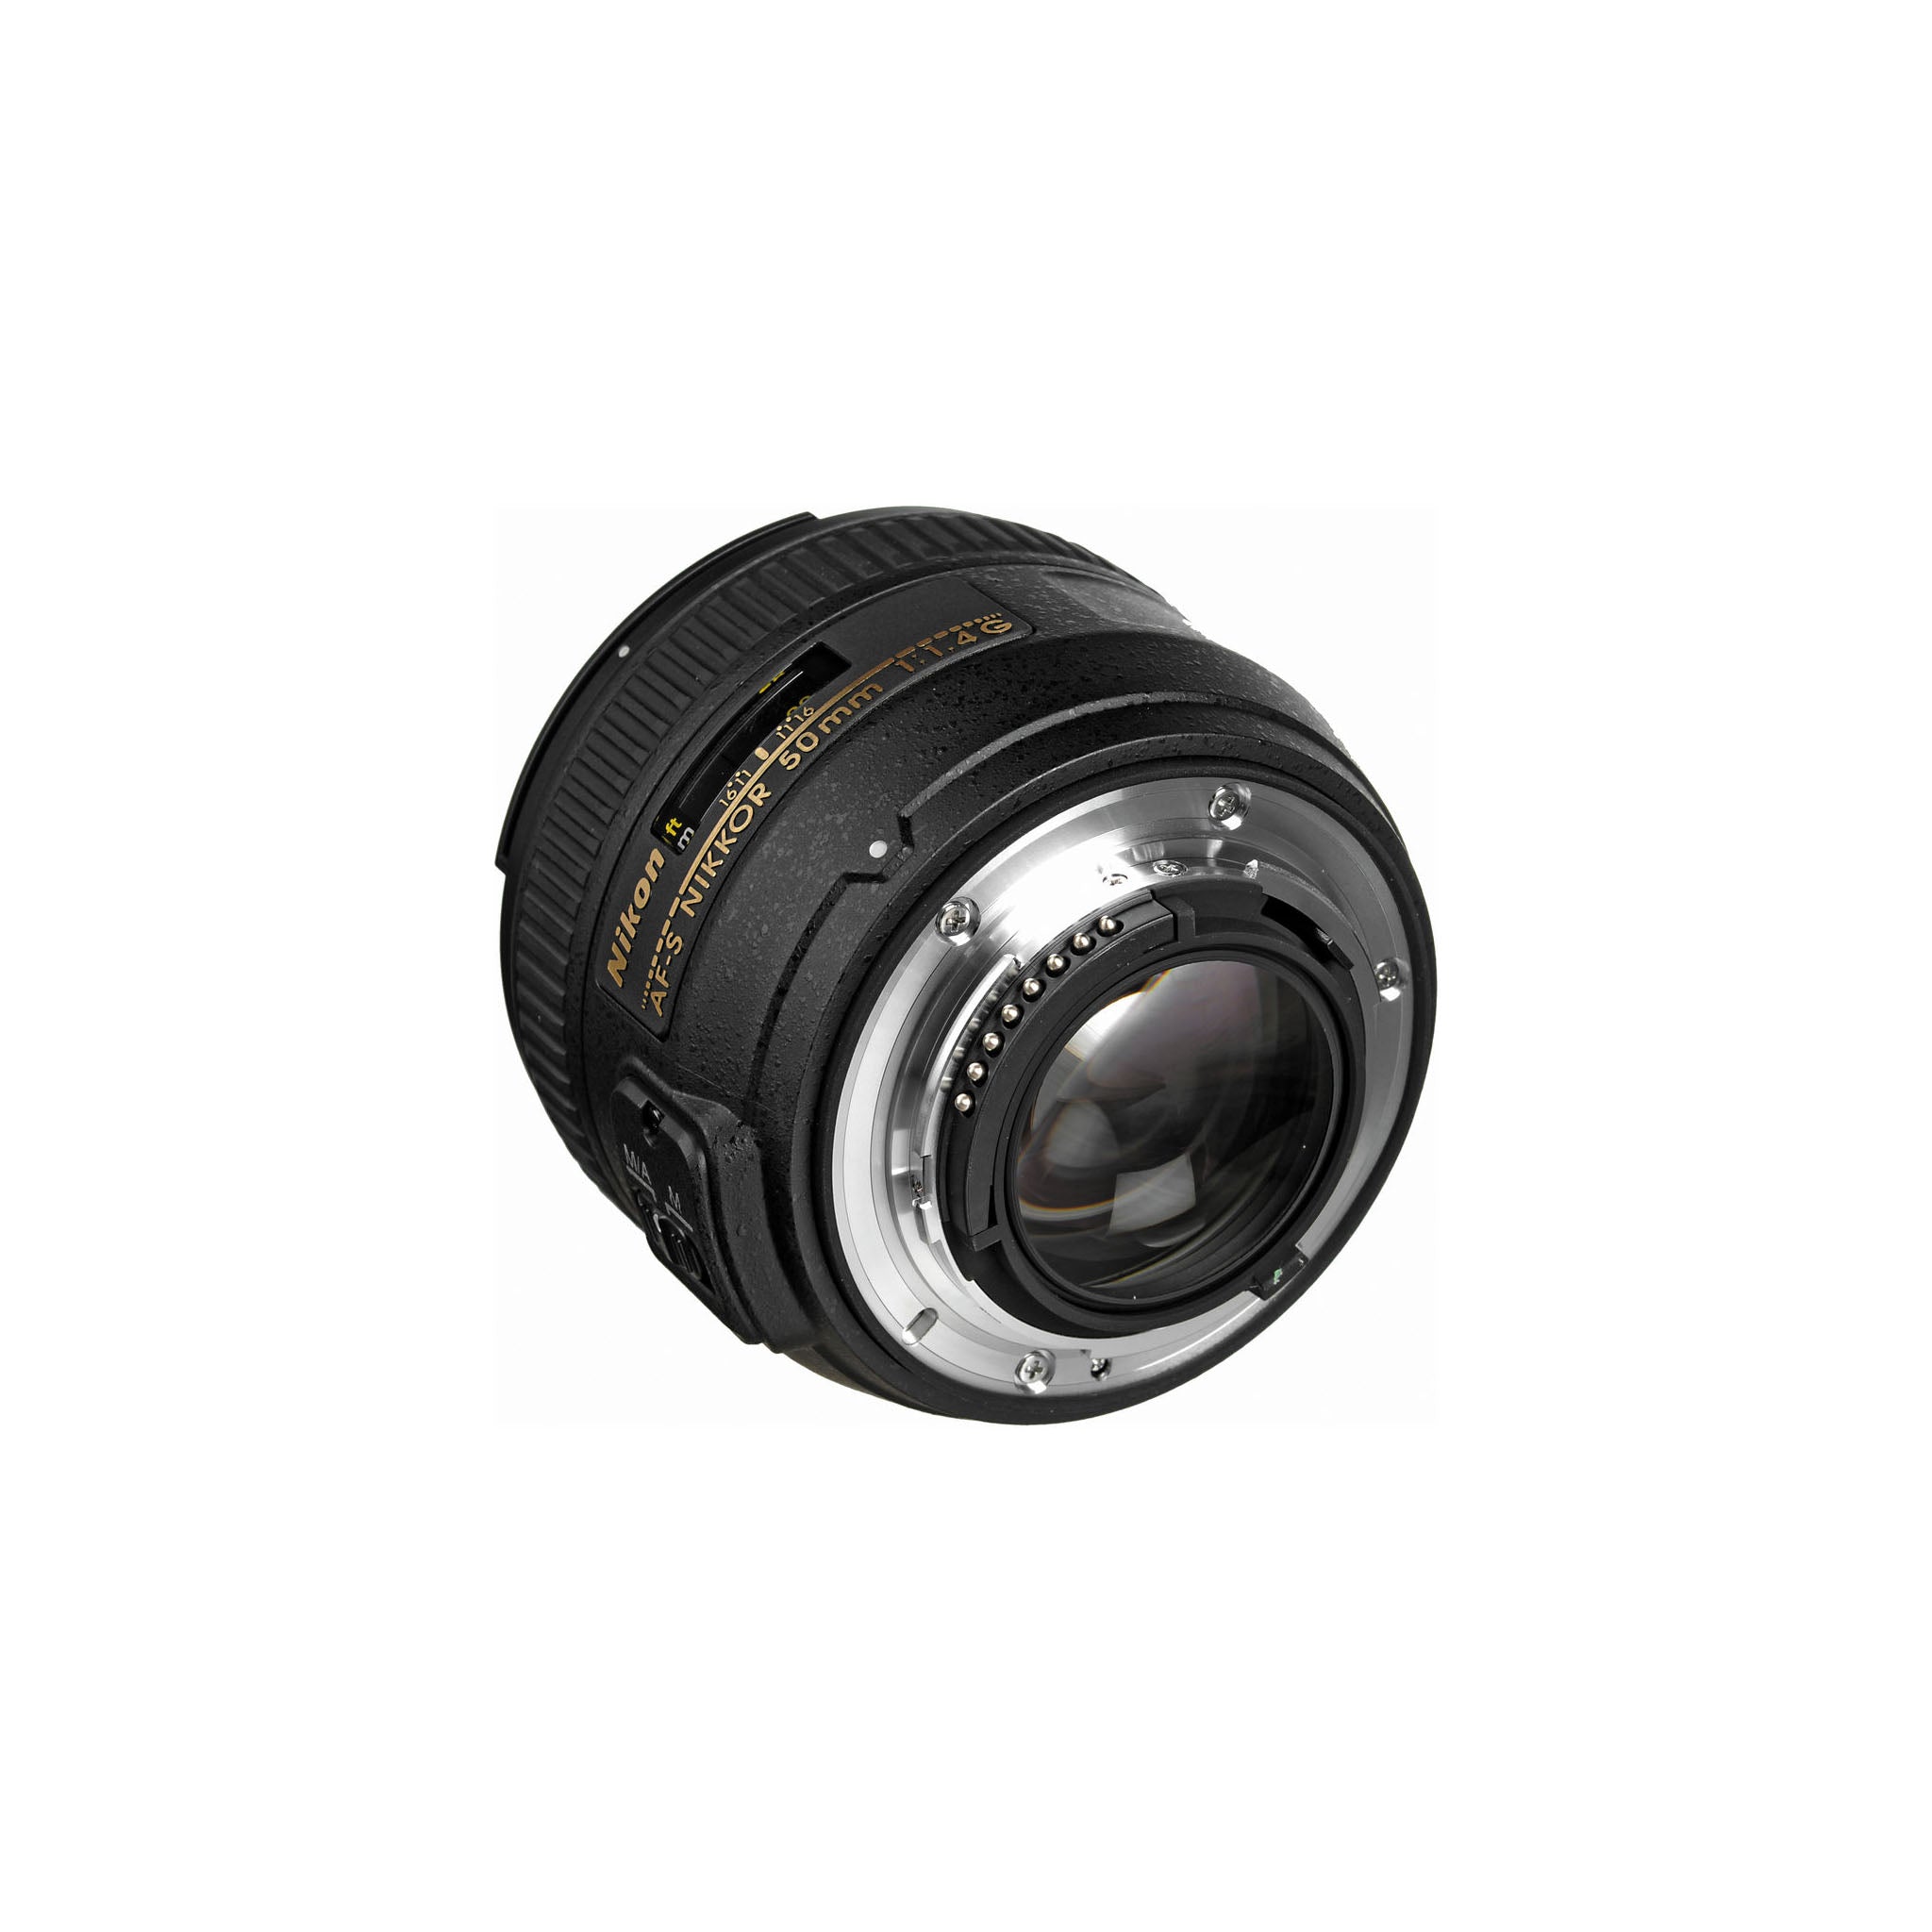 Nikon AF-S 50mm F1.4G Lens